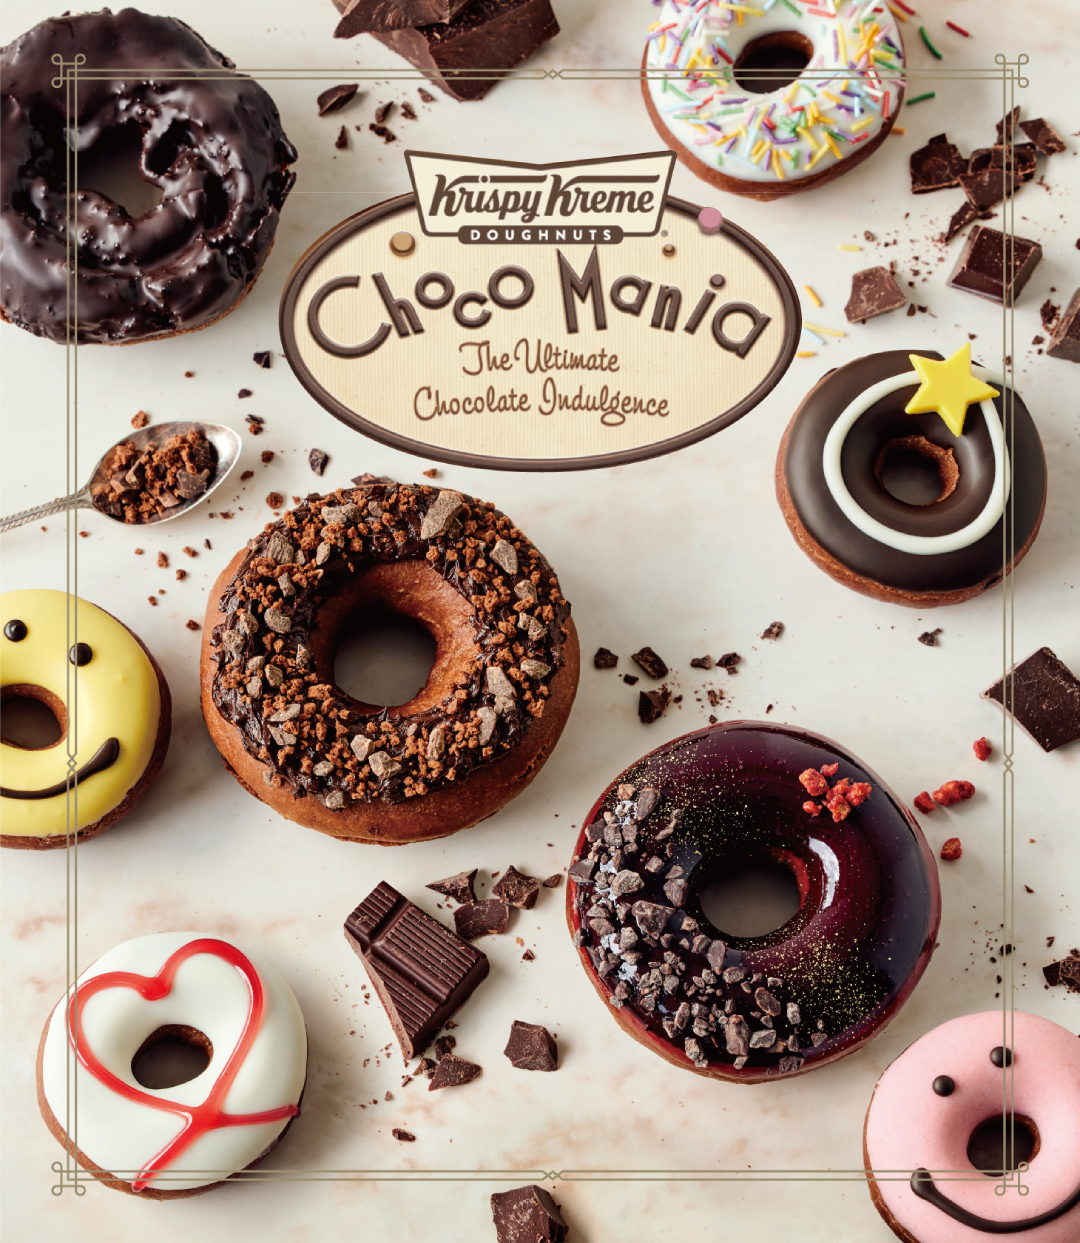 チョコ尽くし のドーナツでバレンタインシーズンを楽しもう クリスピー クリーム ドーナツにて Choco Mania プロモーション開催 詳細記事 Sgs109